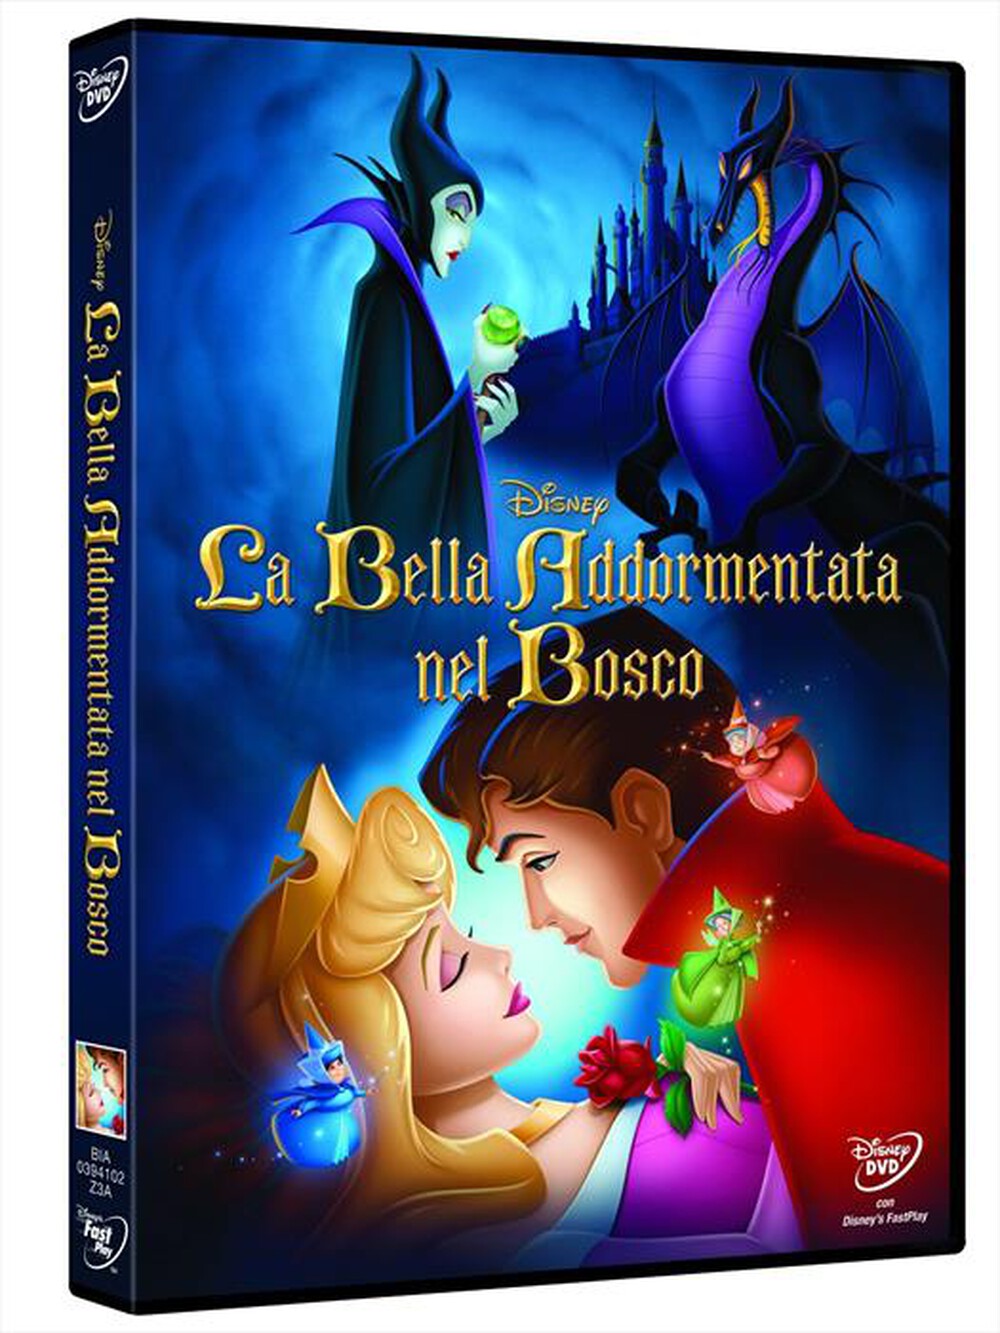 "WALT DISNEY - Bella Addormentata Nel Bosco (La) - "